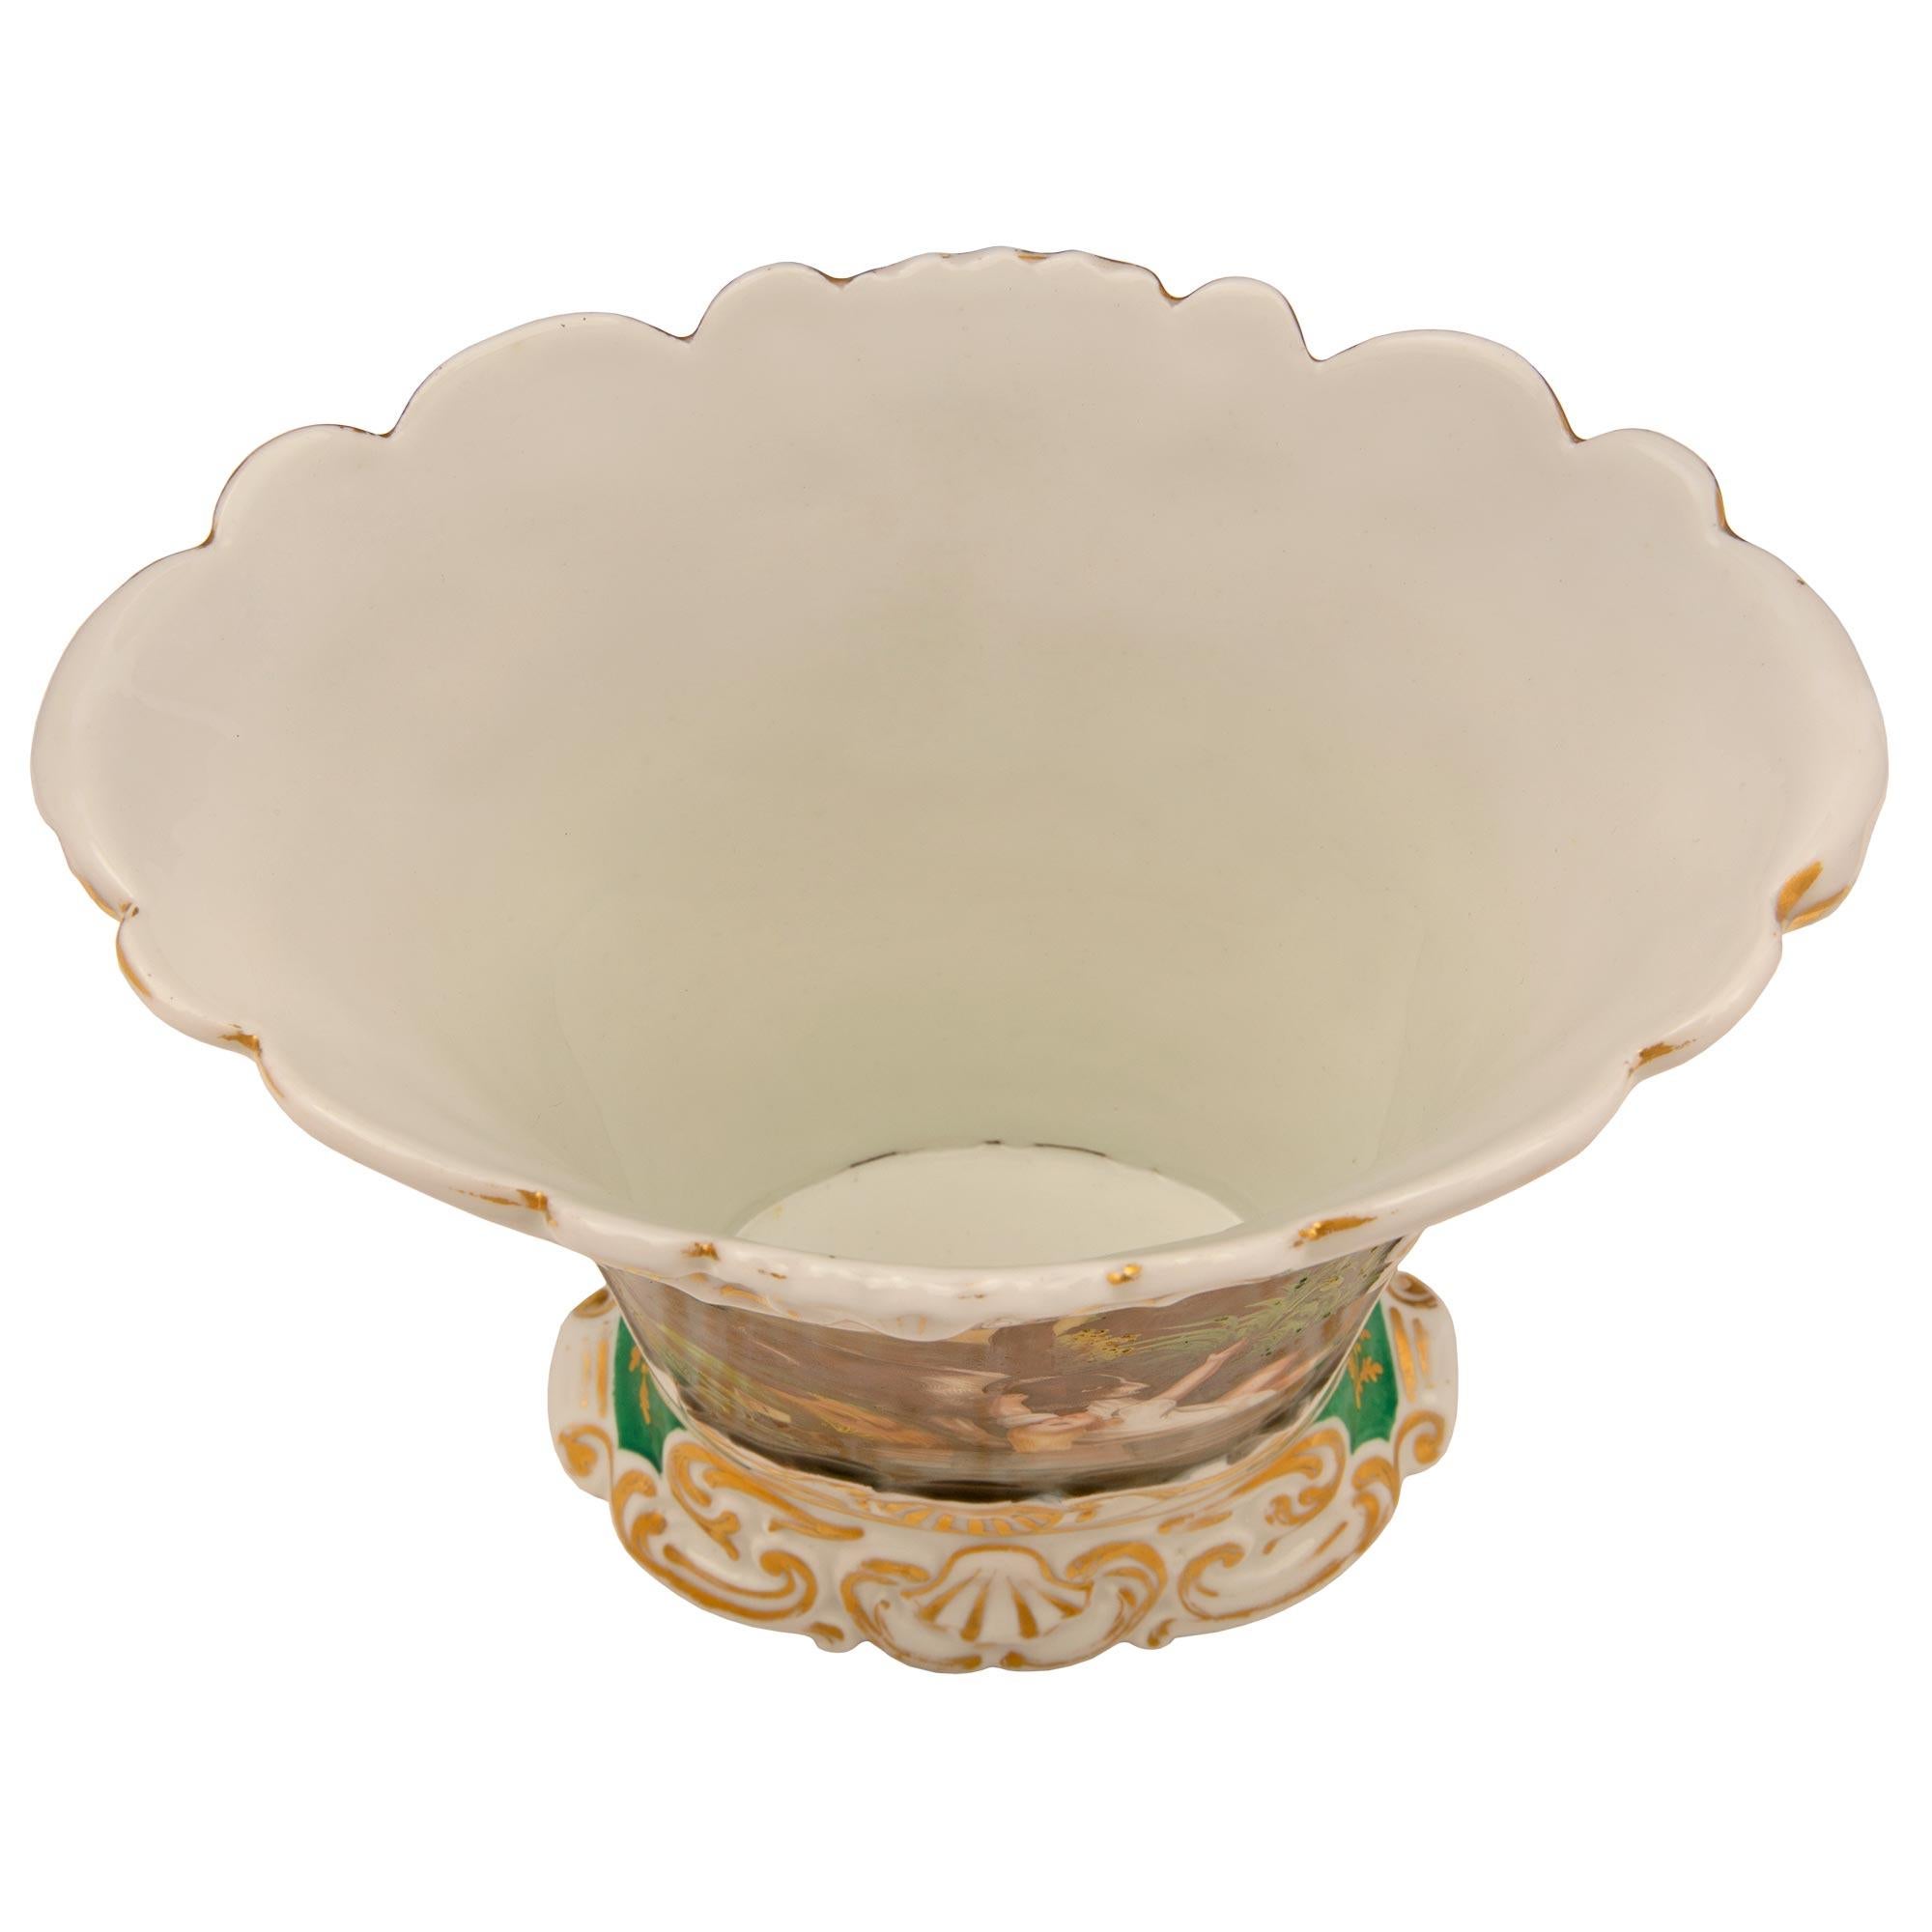 Eine äußerst charmante und sehr dekorative französische Porzellanvase aus dem 19. Jahrhundert im Stil Louis XV, handbemalt. Die Vase wird von einem schönen, verschnörkelten Blattsockel mit goldenen Akzenten getragen. Der leicht gewölbte Korpus zeigt